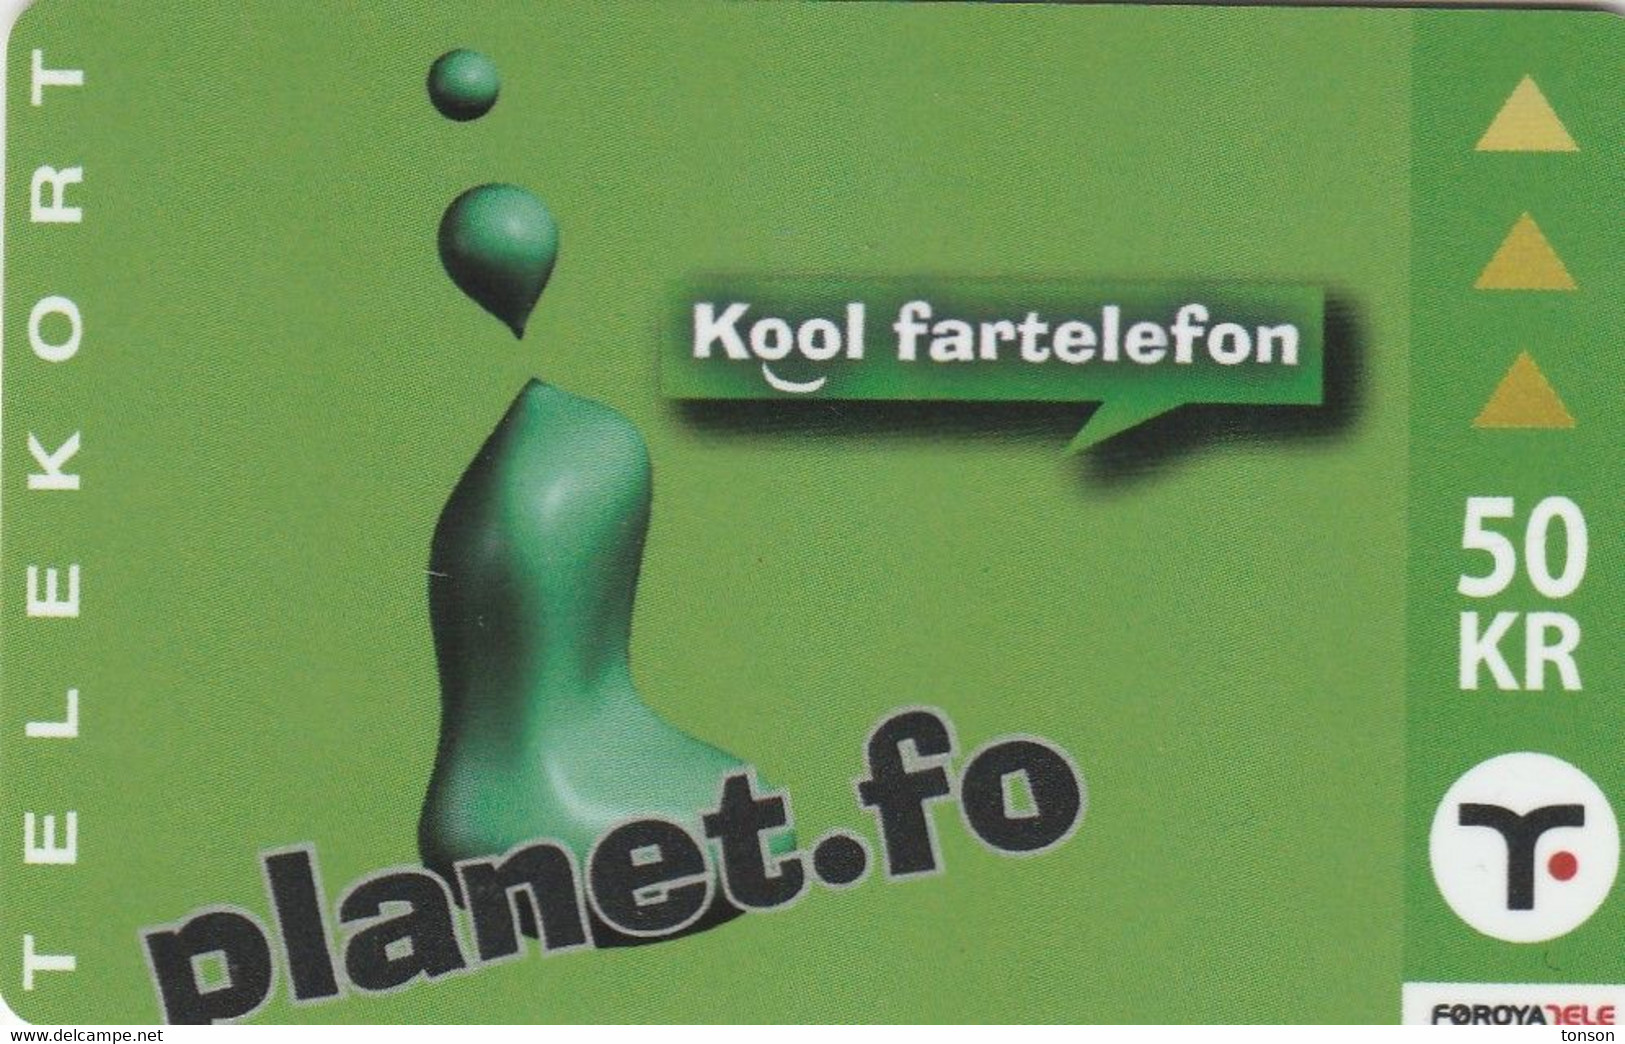 Faroe Islands, OR-003, 50 Kr ,  Planet.fo, Kool Fartelefon, 2 Scans. - Färöer I.